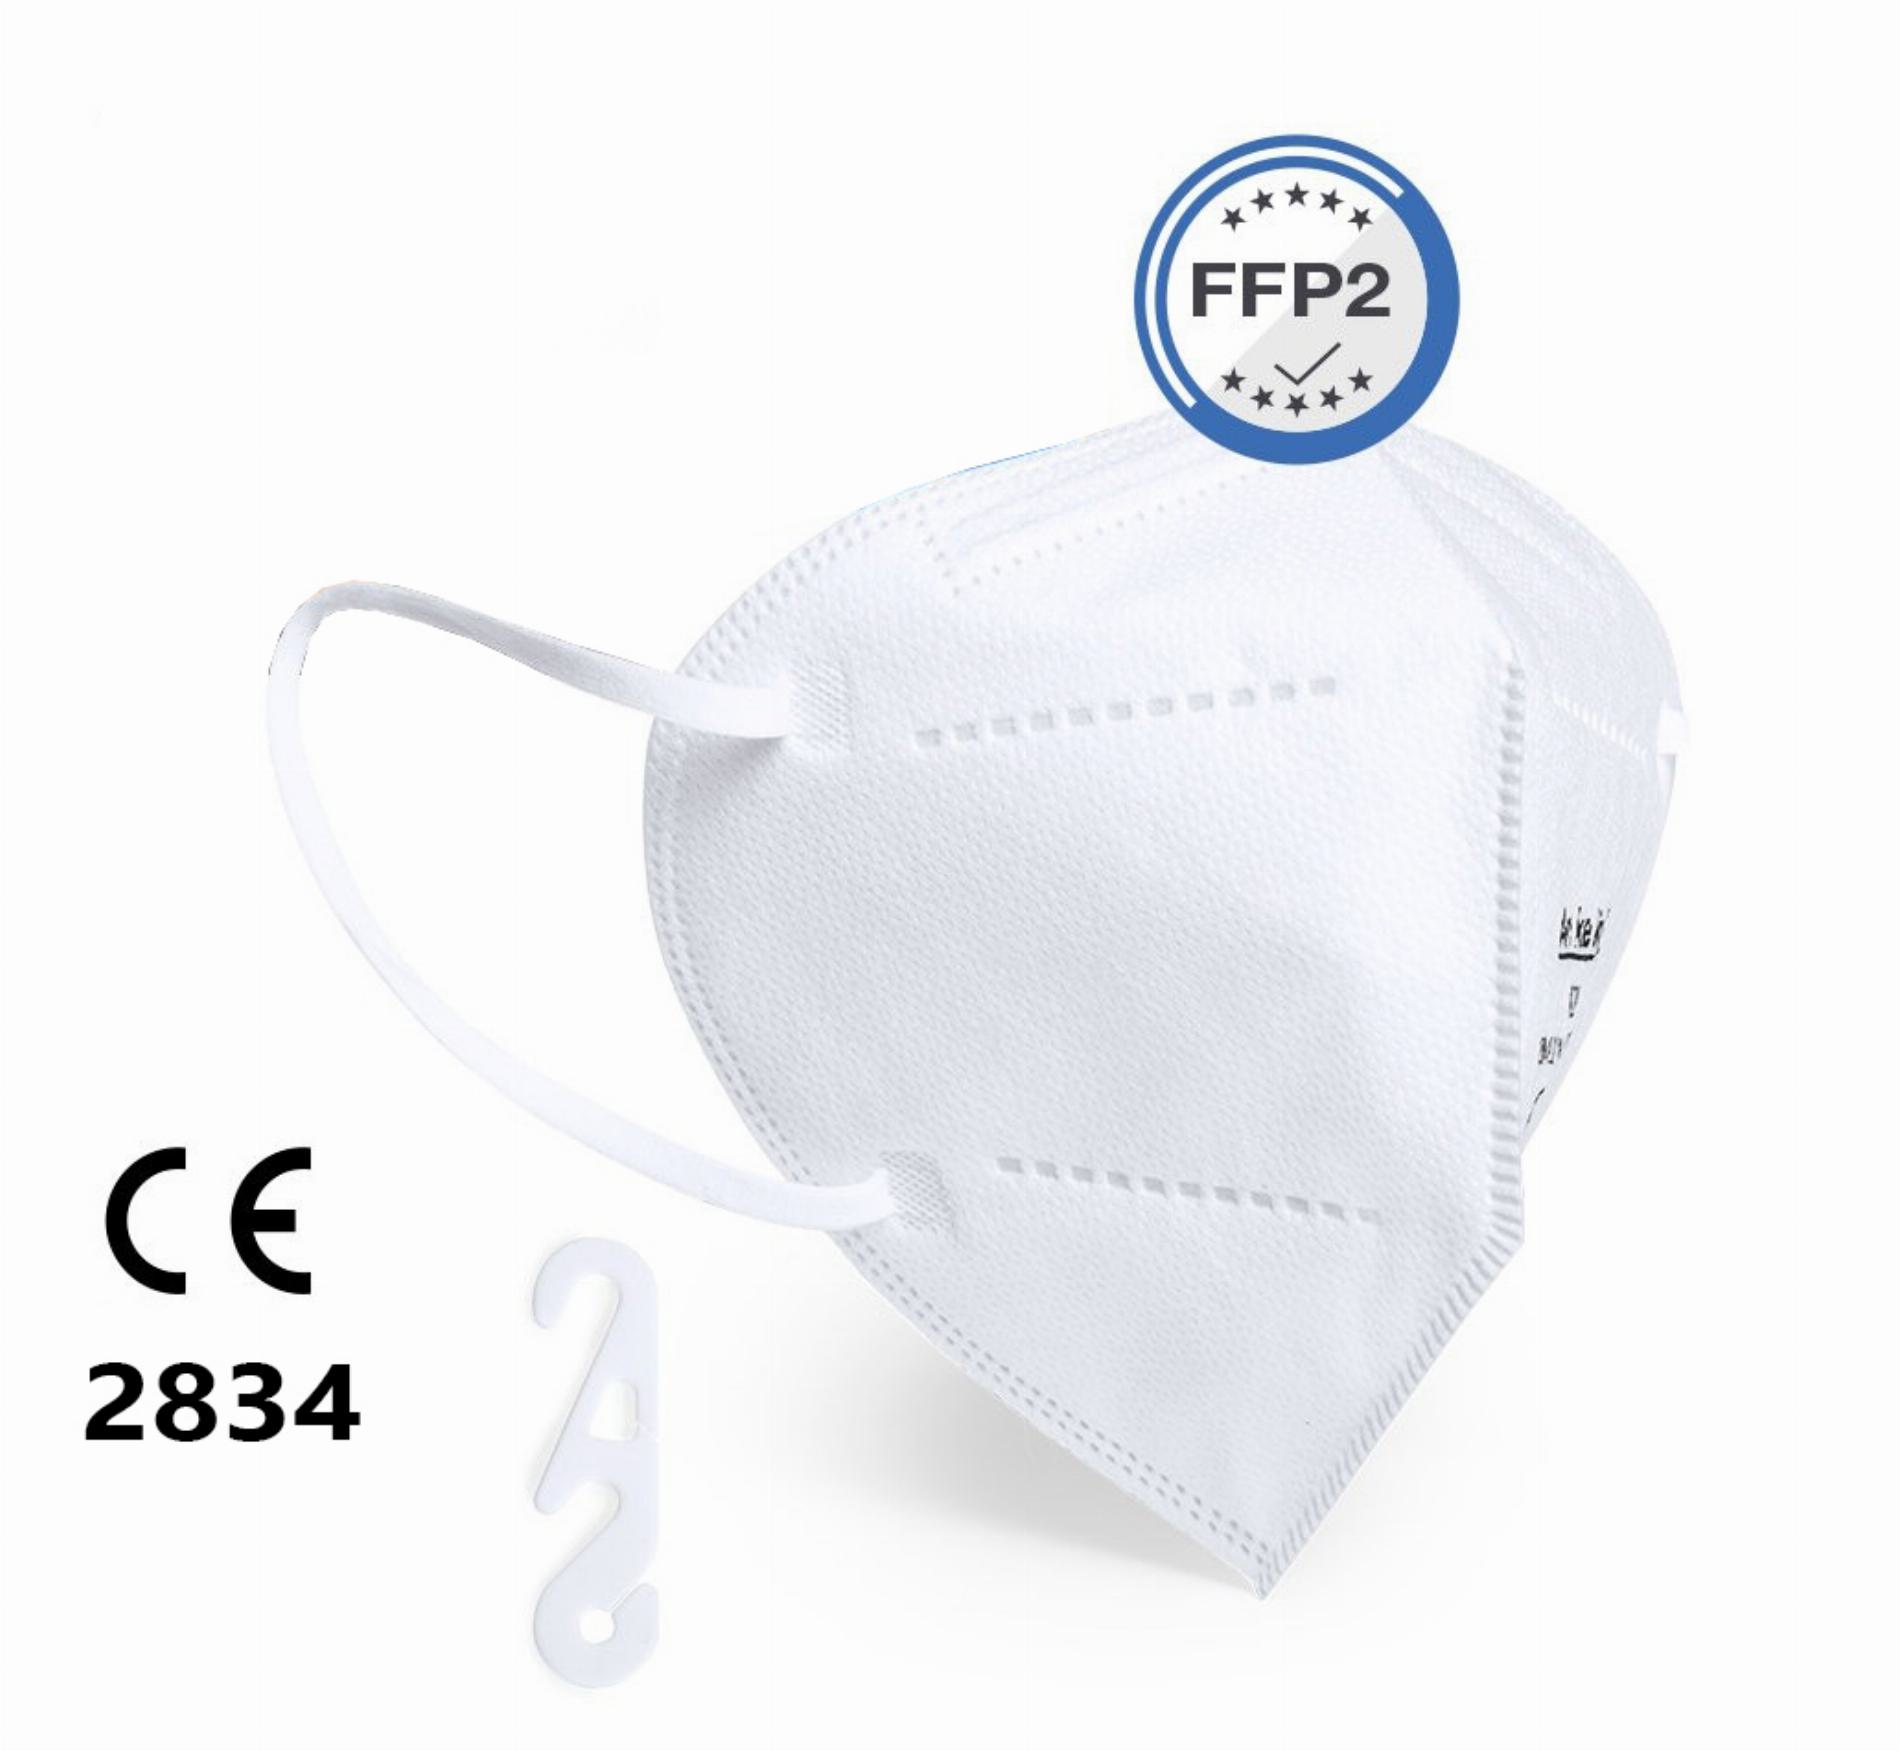 25 x FFP2 Maske faltbar, mit Gummizügen (ISO CE 2834)